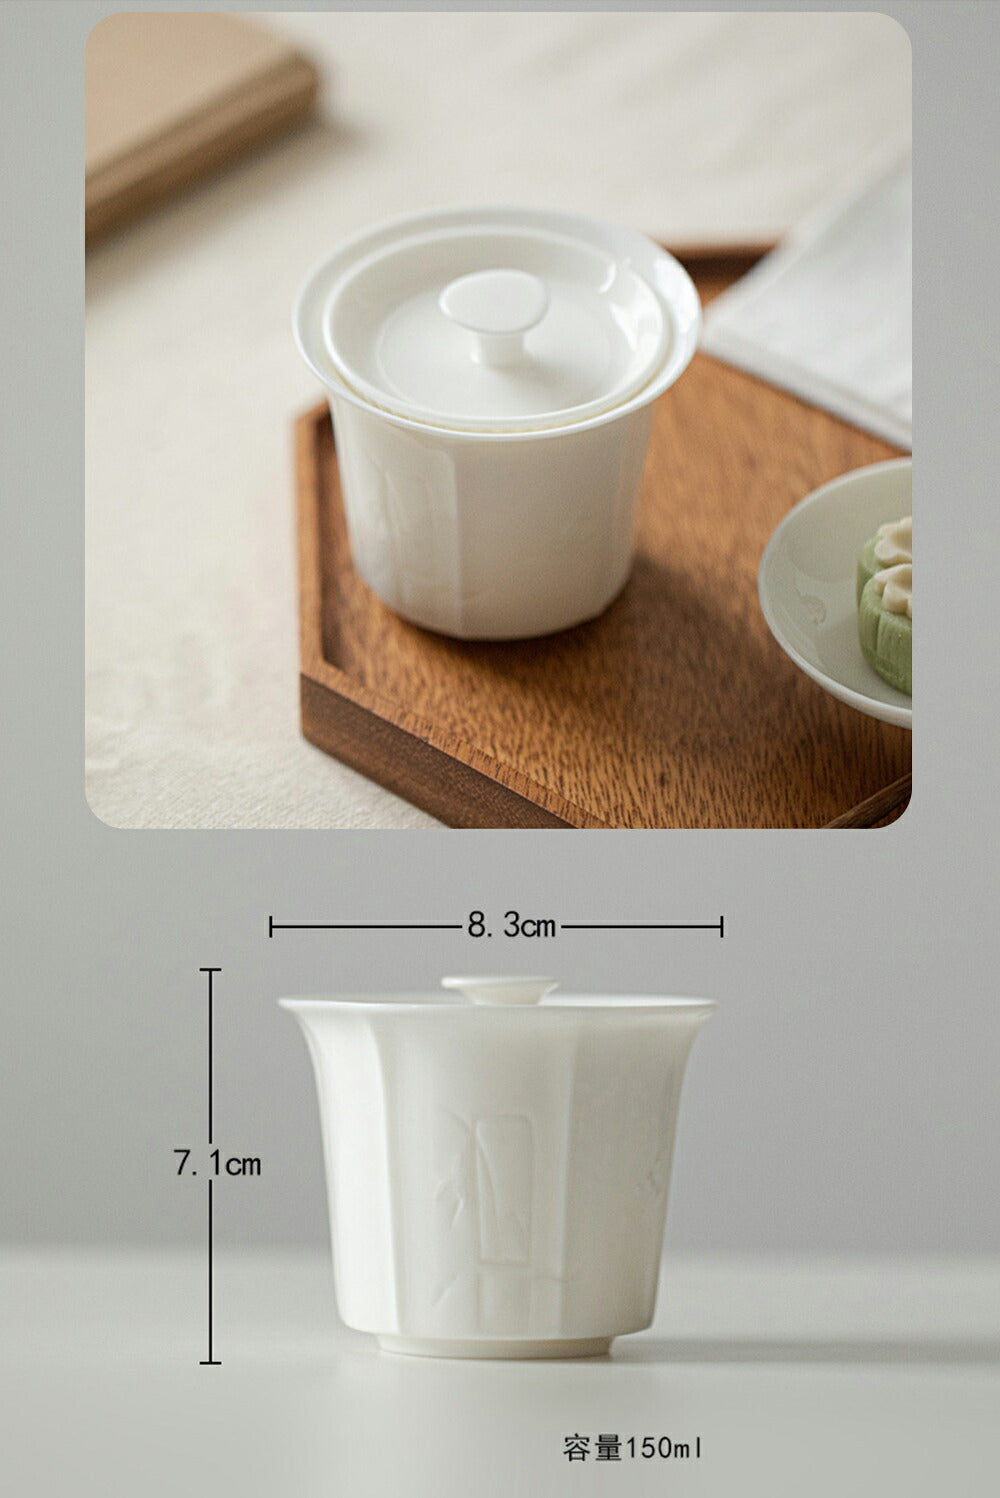 IwaiLoft 白い茶器 宝瓶 蓋碗 彫刻 湯冷まし 白磁 緑茶 玉露 番茶 プレゼント 茶器 磁器 和風  ホワイト 白い食器 中国茶器 台湾茶器 岩茶 父の日 母の日 ギフト